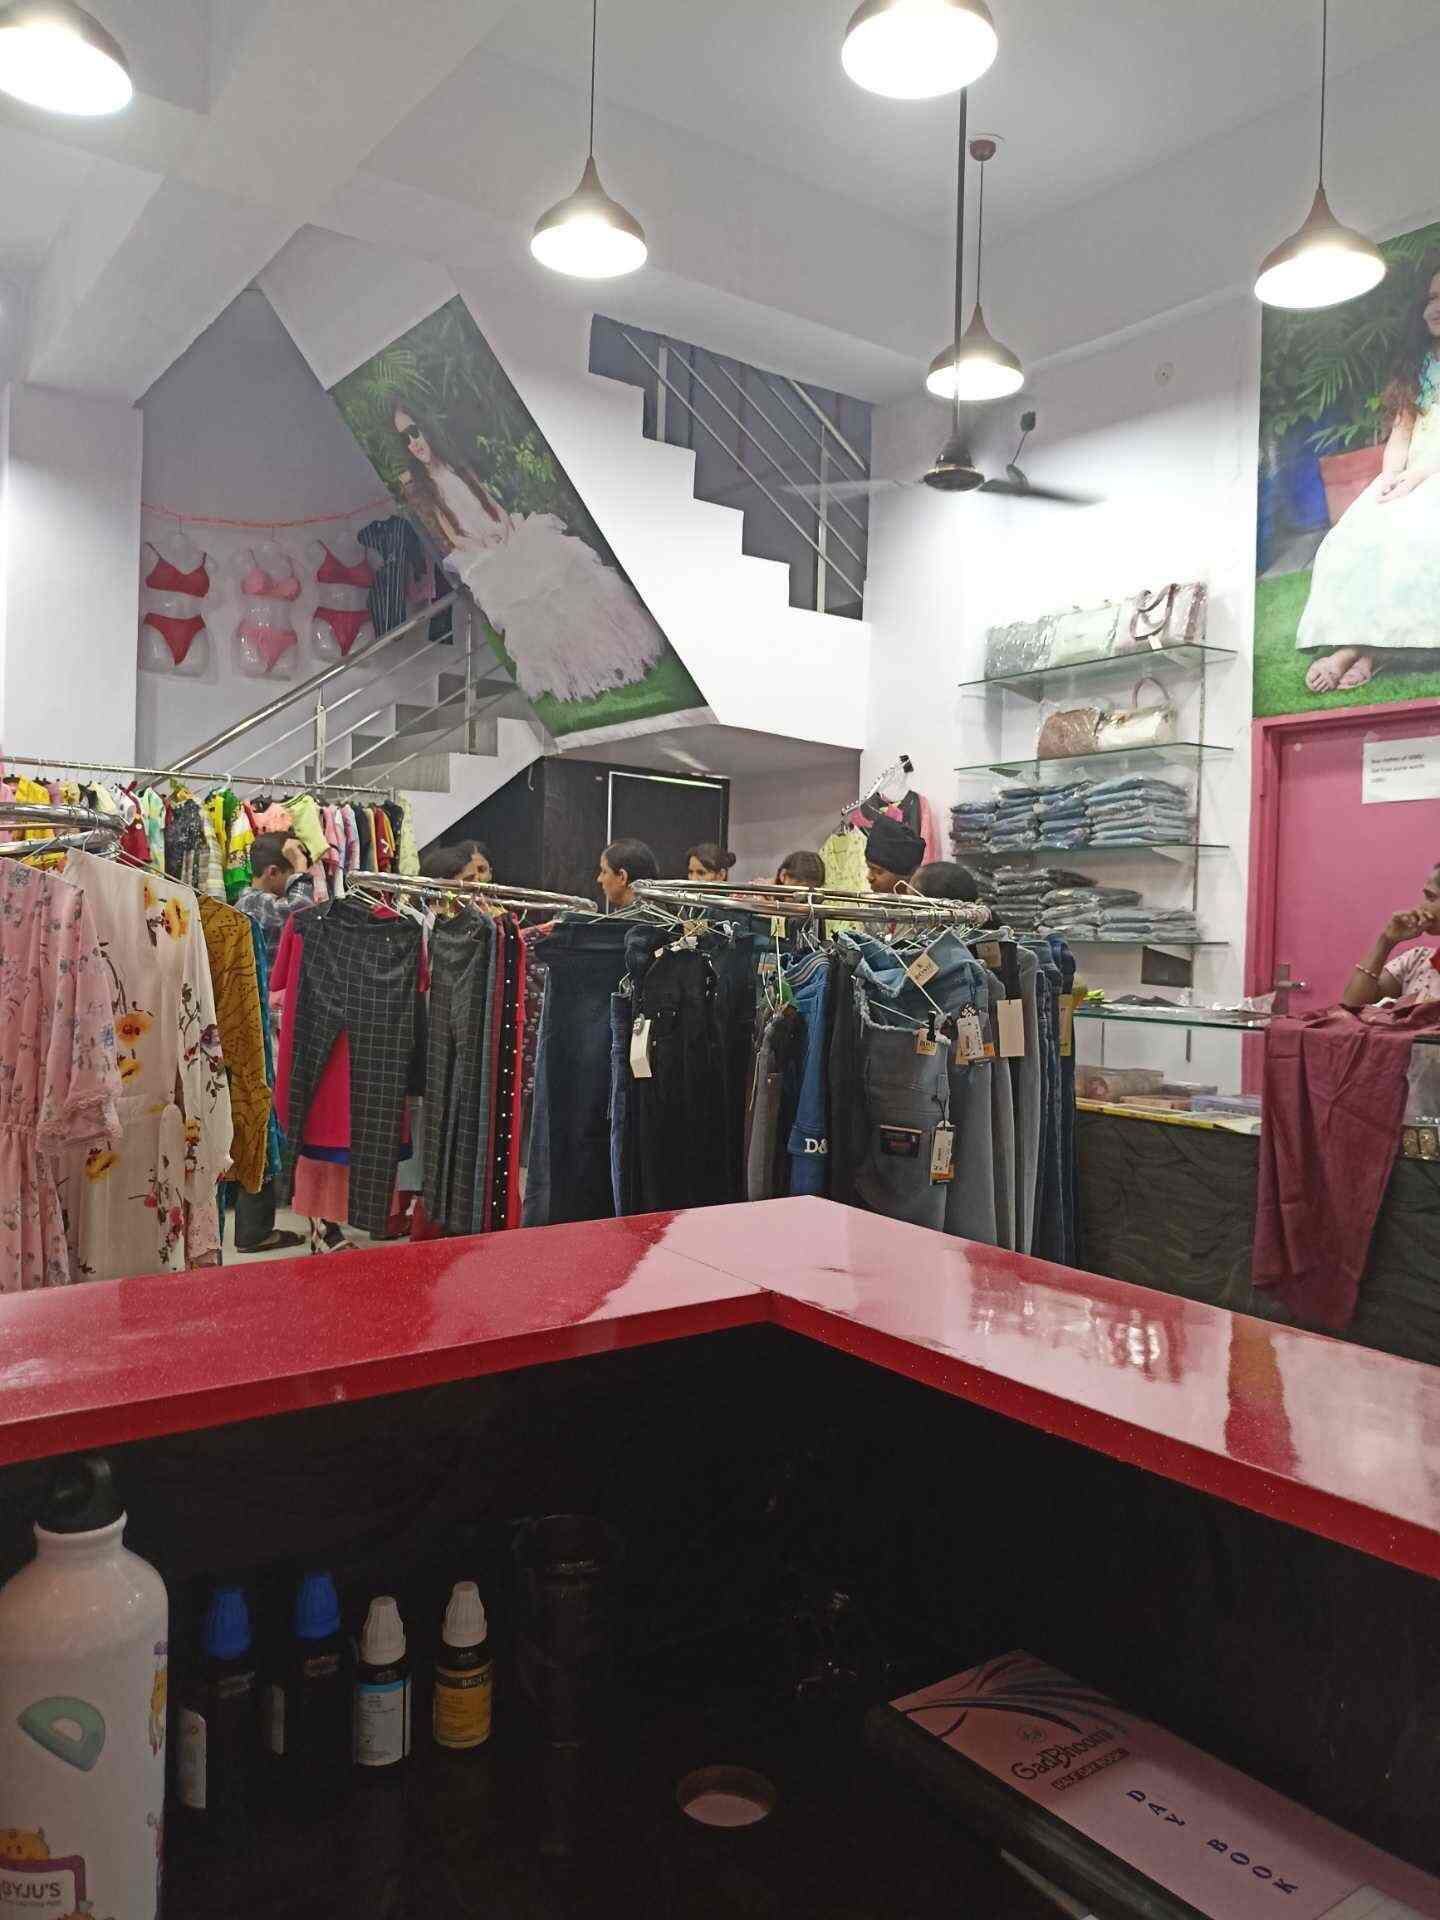 86839fashion-hut-gtb-nagar-ludhiana-ludhiana-women-readymade-garment-retailers-71v0vf5rw4.jpg